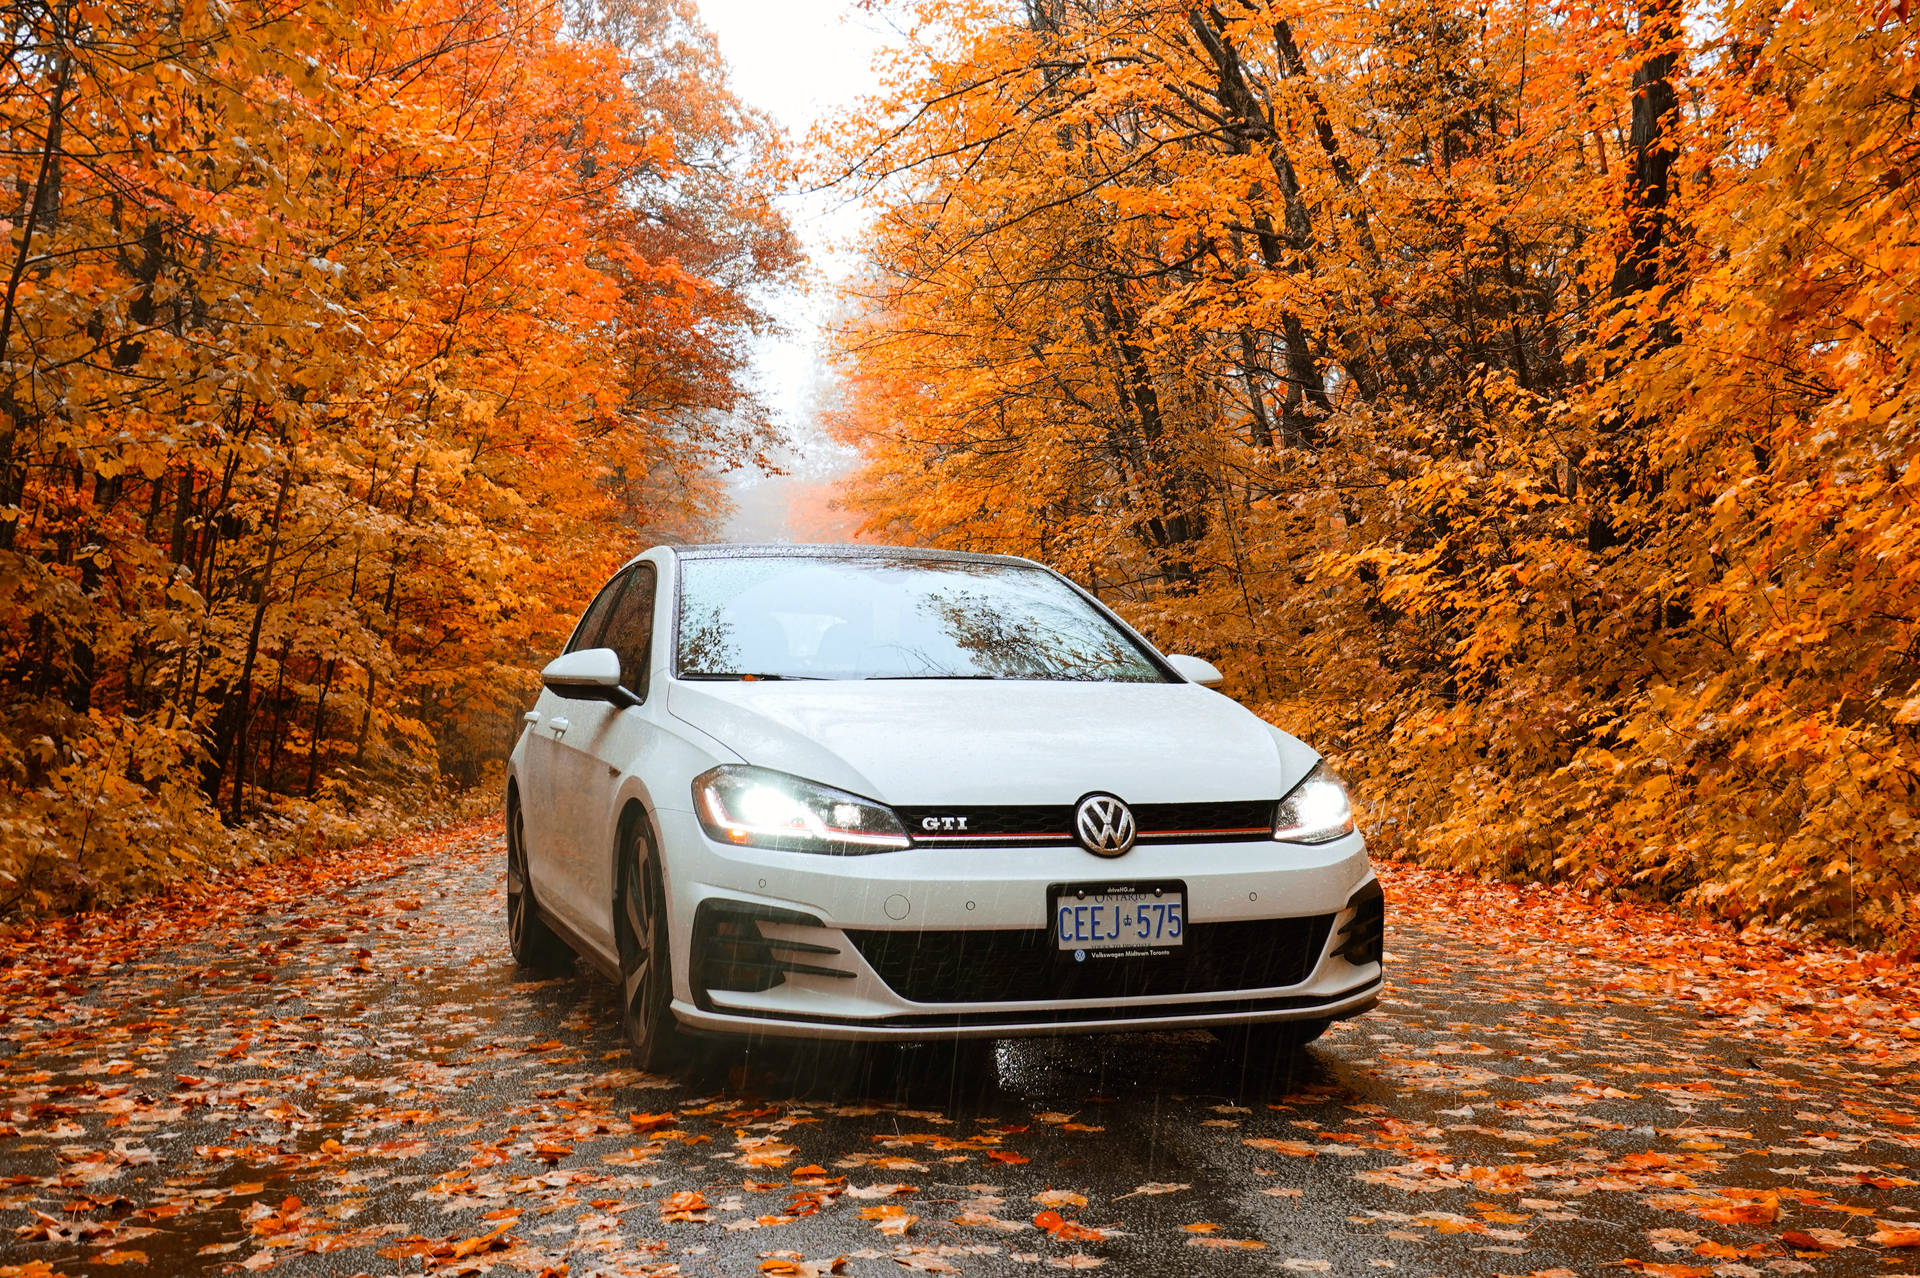 Volkswagen Golf Gti Mk7 In Autumn Background